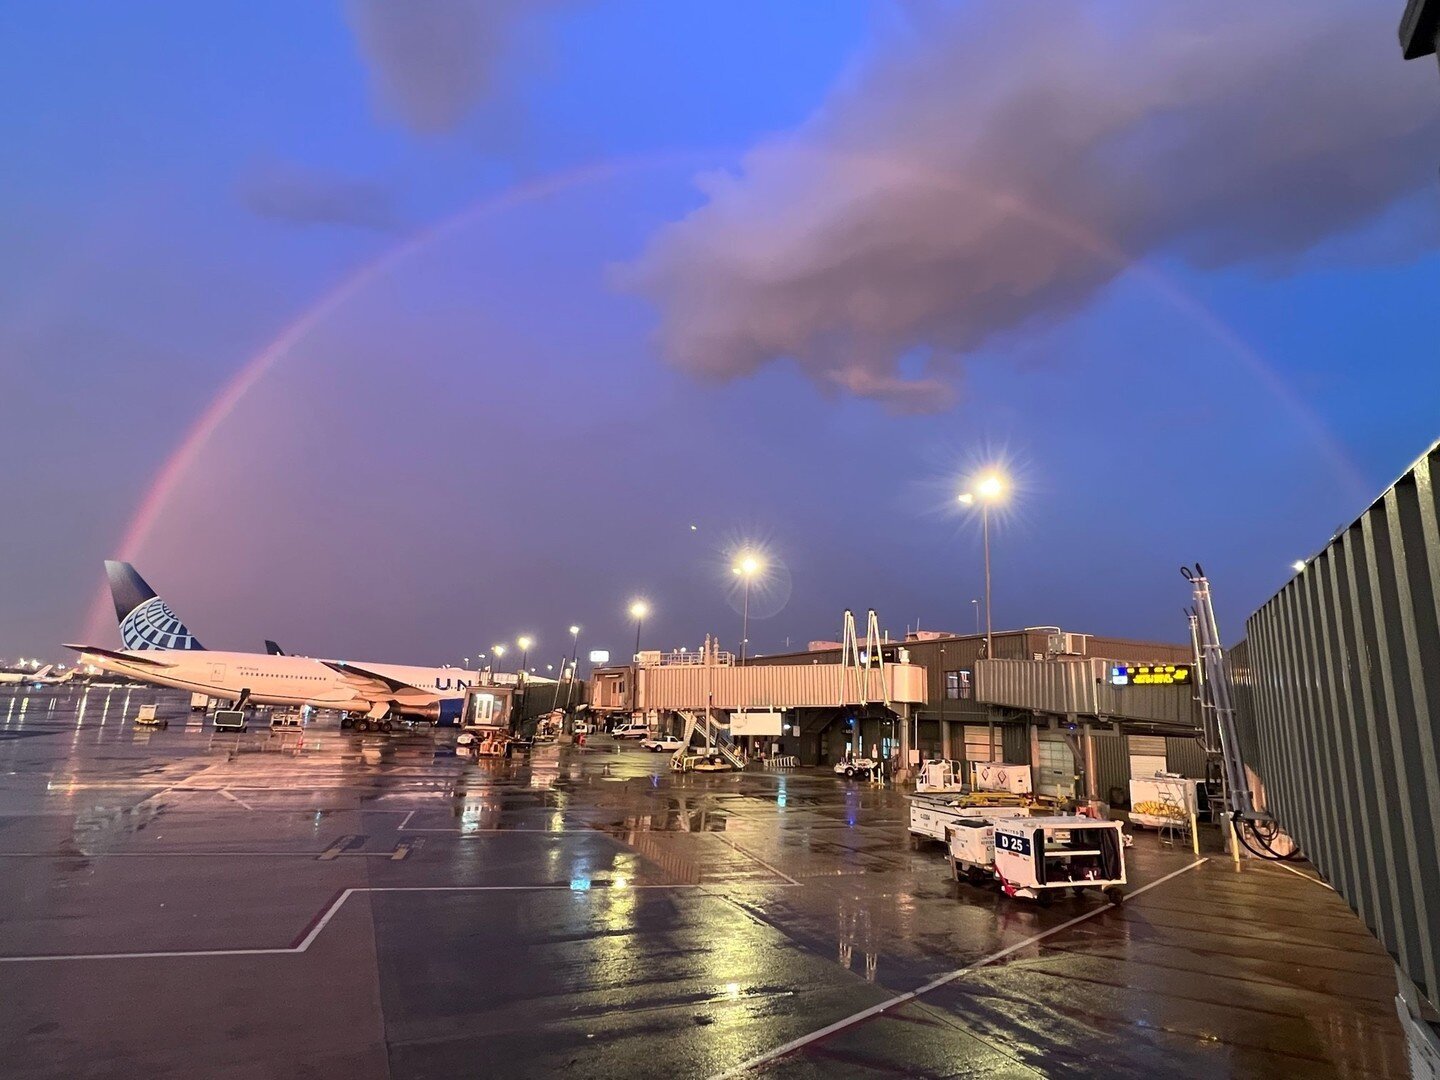 Pre-flight rainbow!⁠
⁠
#MesaAirlines